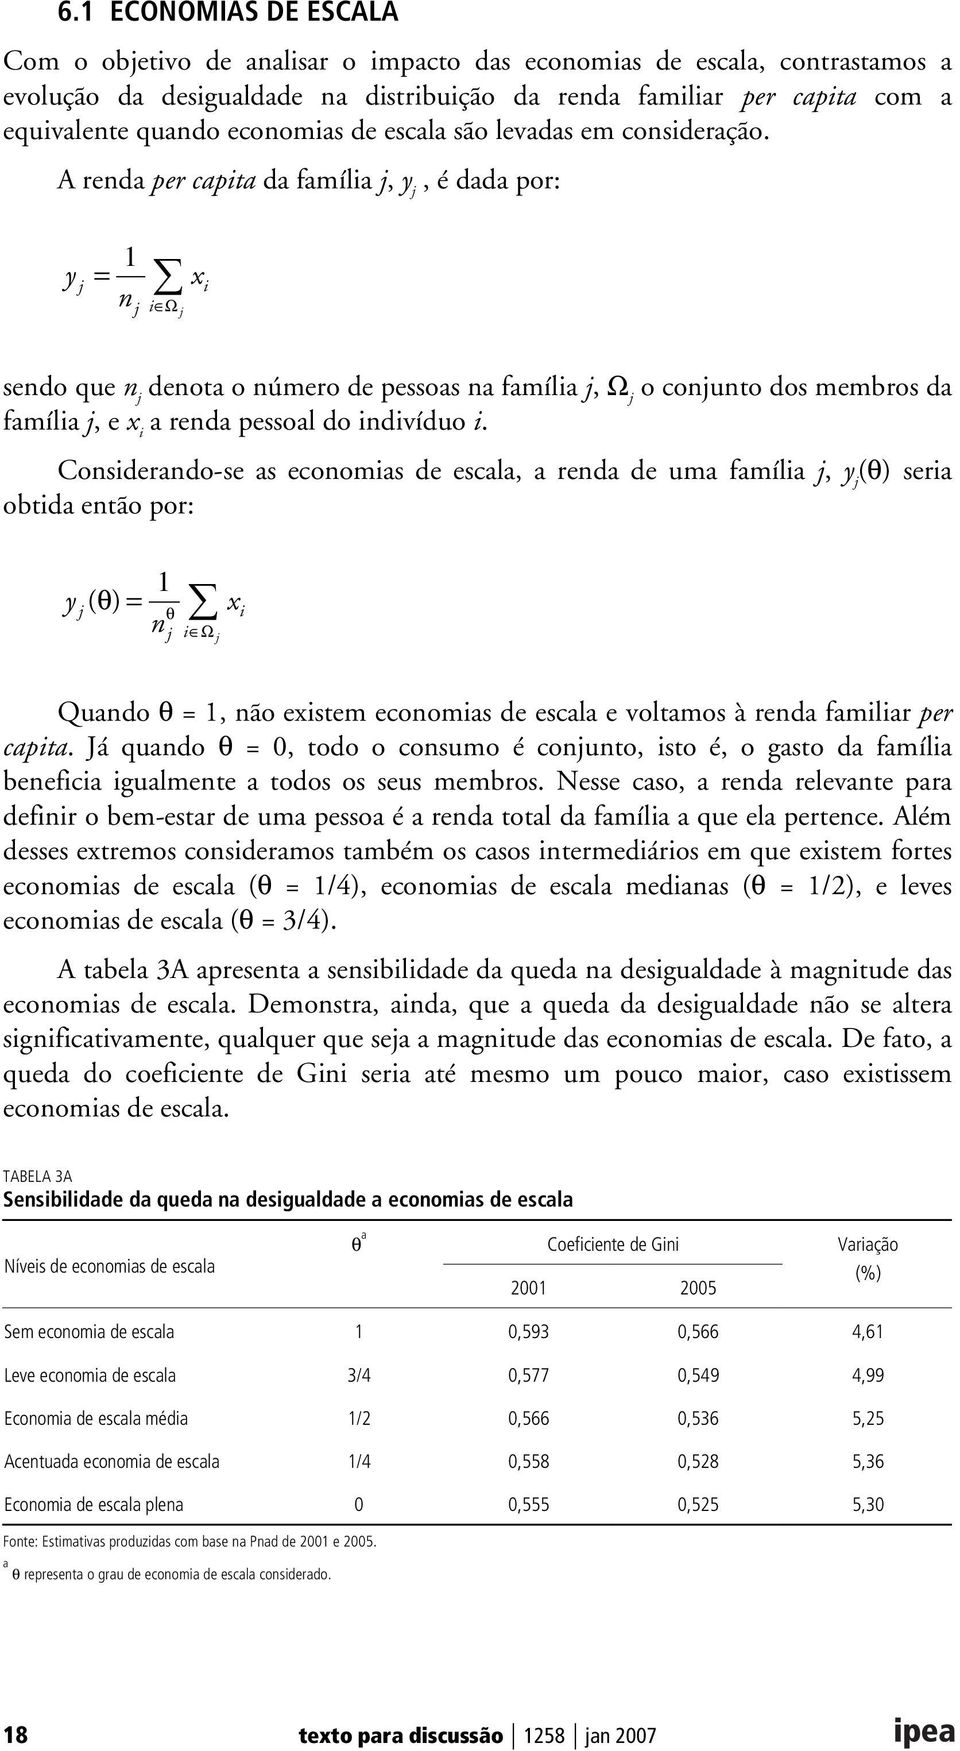 A renda per capita da família j, y j, é dada por: y j 1 = x n j i Ω j i sendo que n j denota o número de pessoas na família j, Ω j o conjunto dos membros da família j, e x i a renda pessoal do